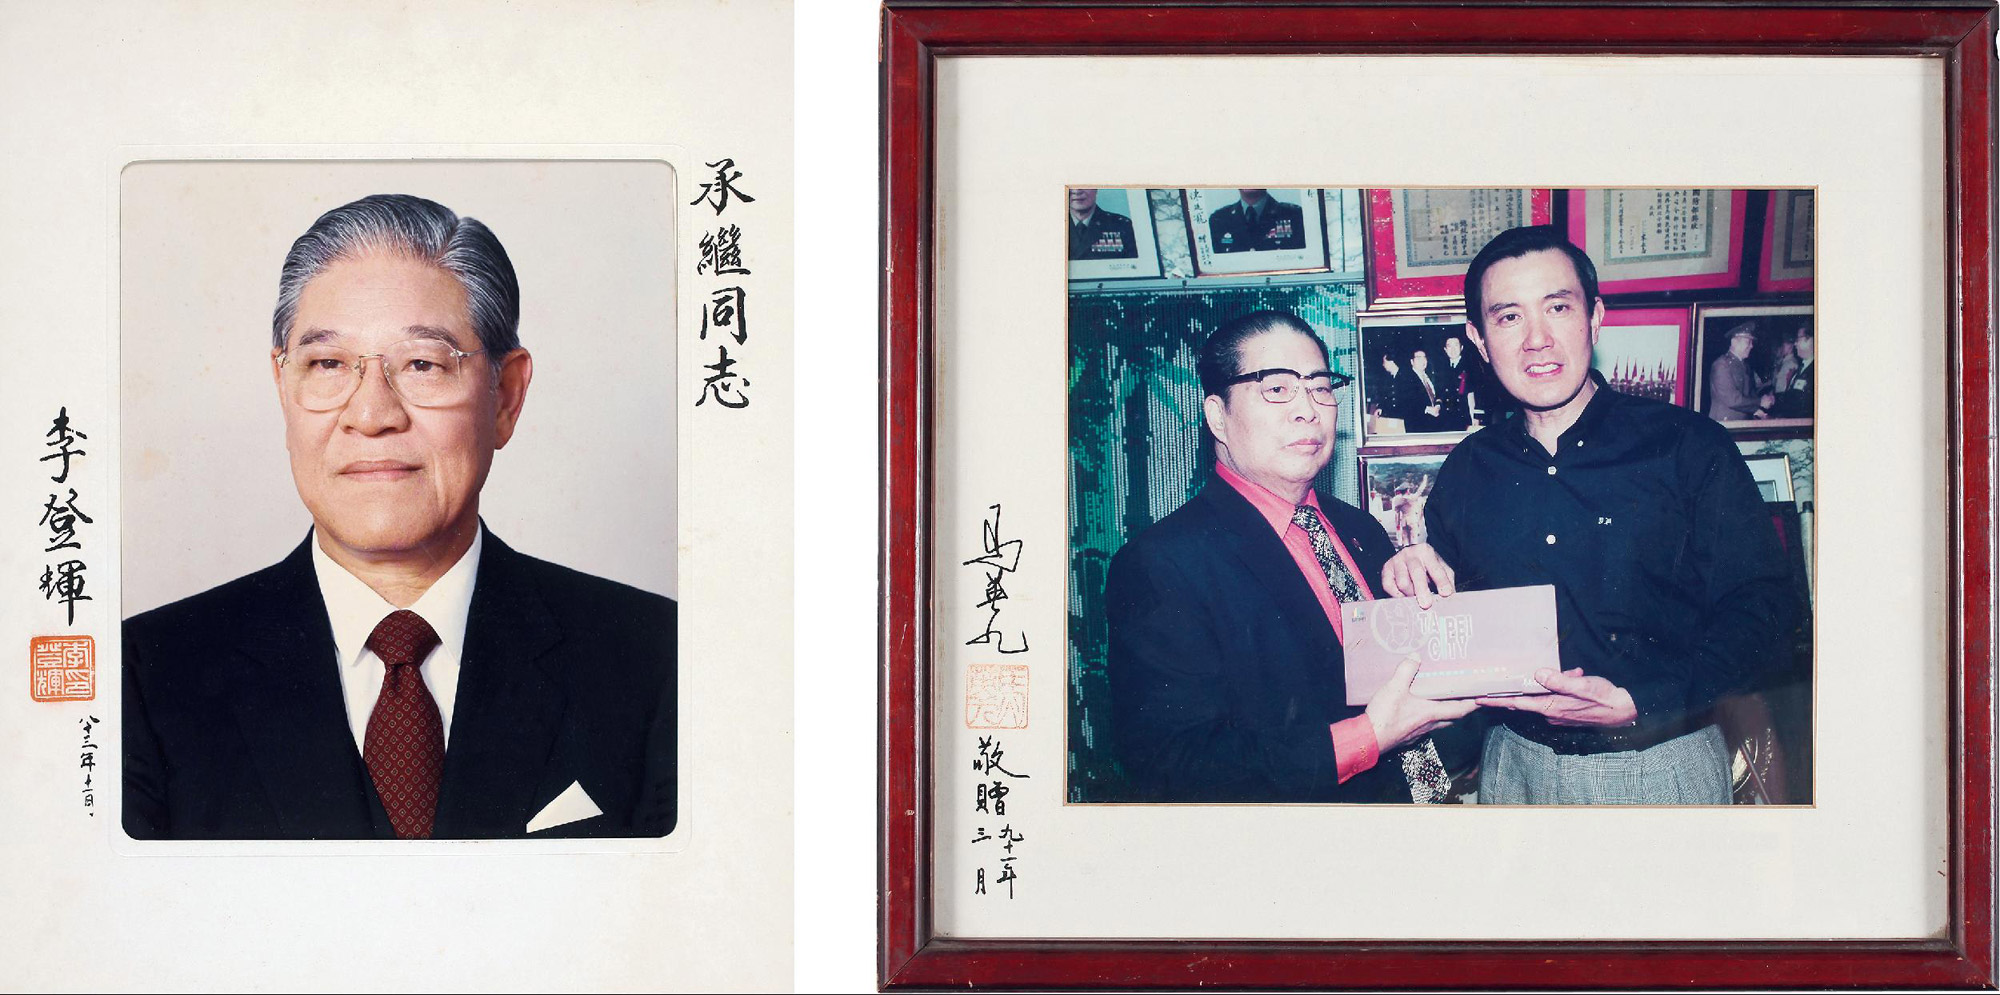 台湾领导人李登辉与马英九亲笔签名照 共二件 拍卖品 图片 价格 鉴赏 摄影 雅昌艺术品拍卖网